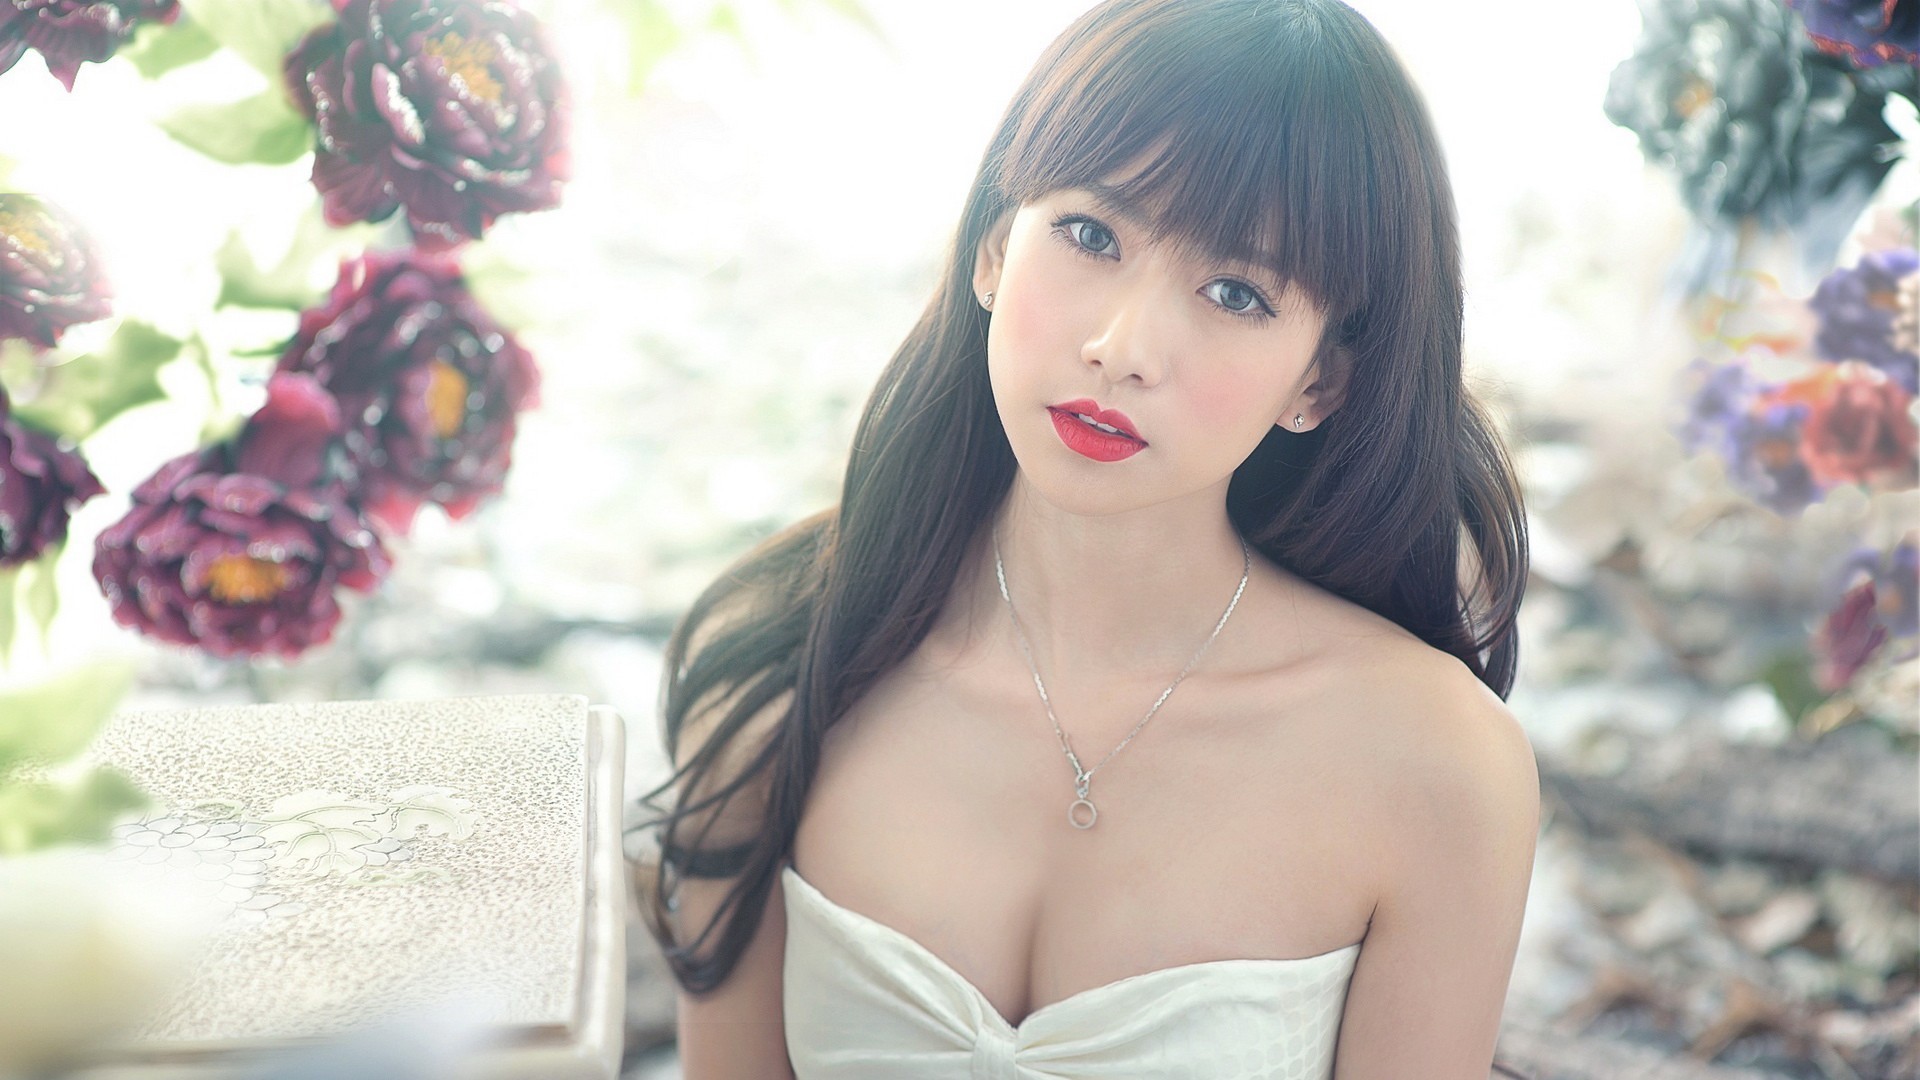 asian model women white dress long hair Wallpaper